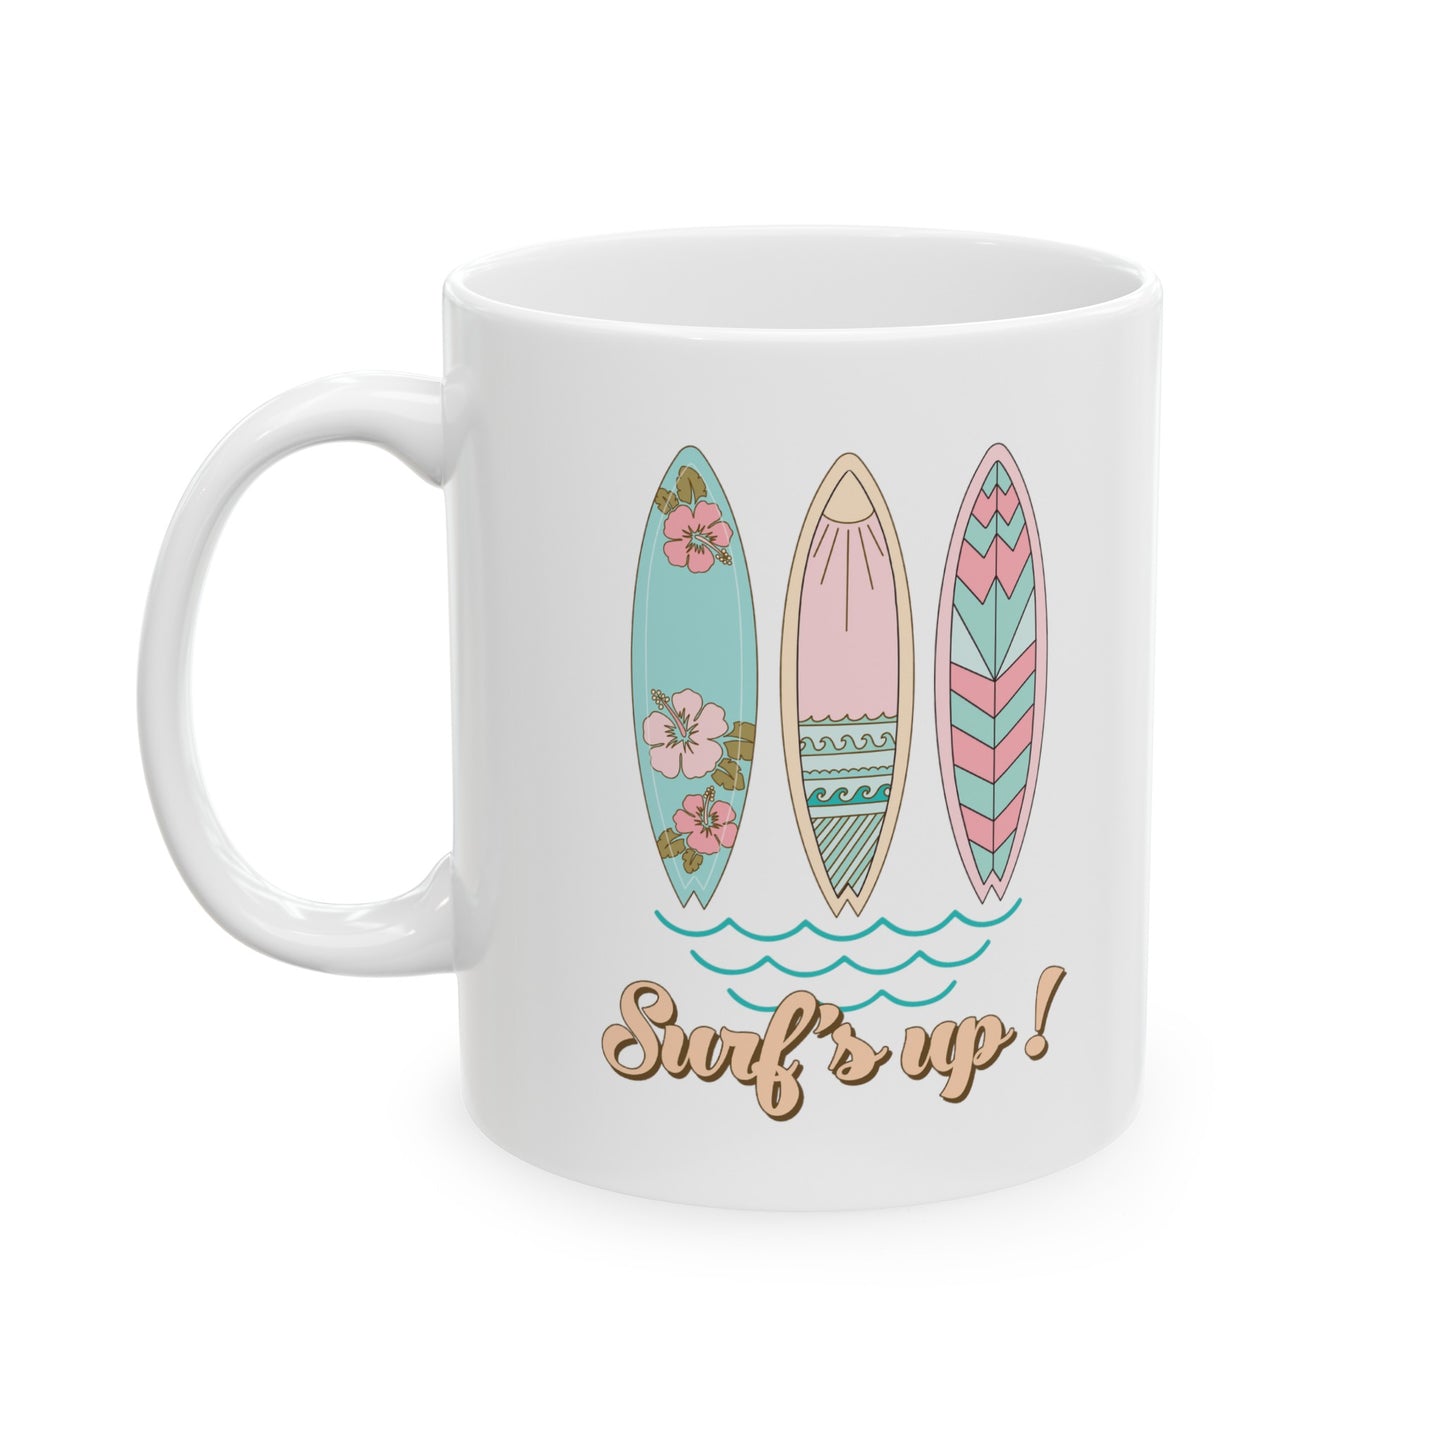 Surf's Up Ceramic Mug, 11 oz